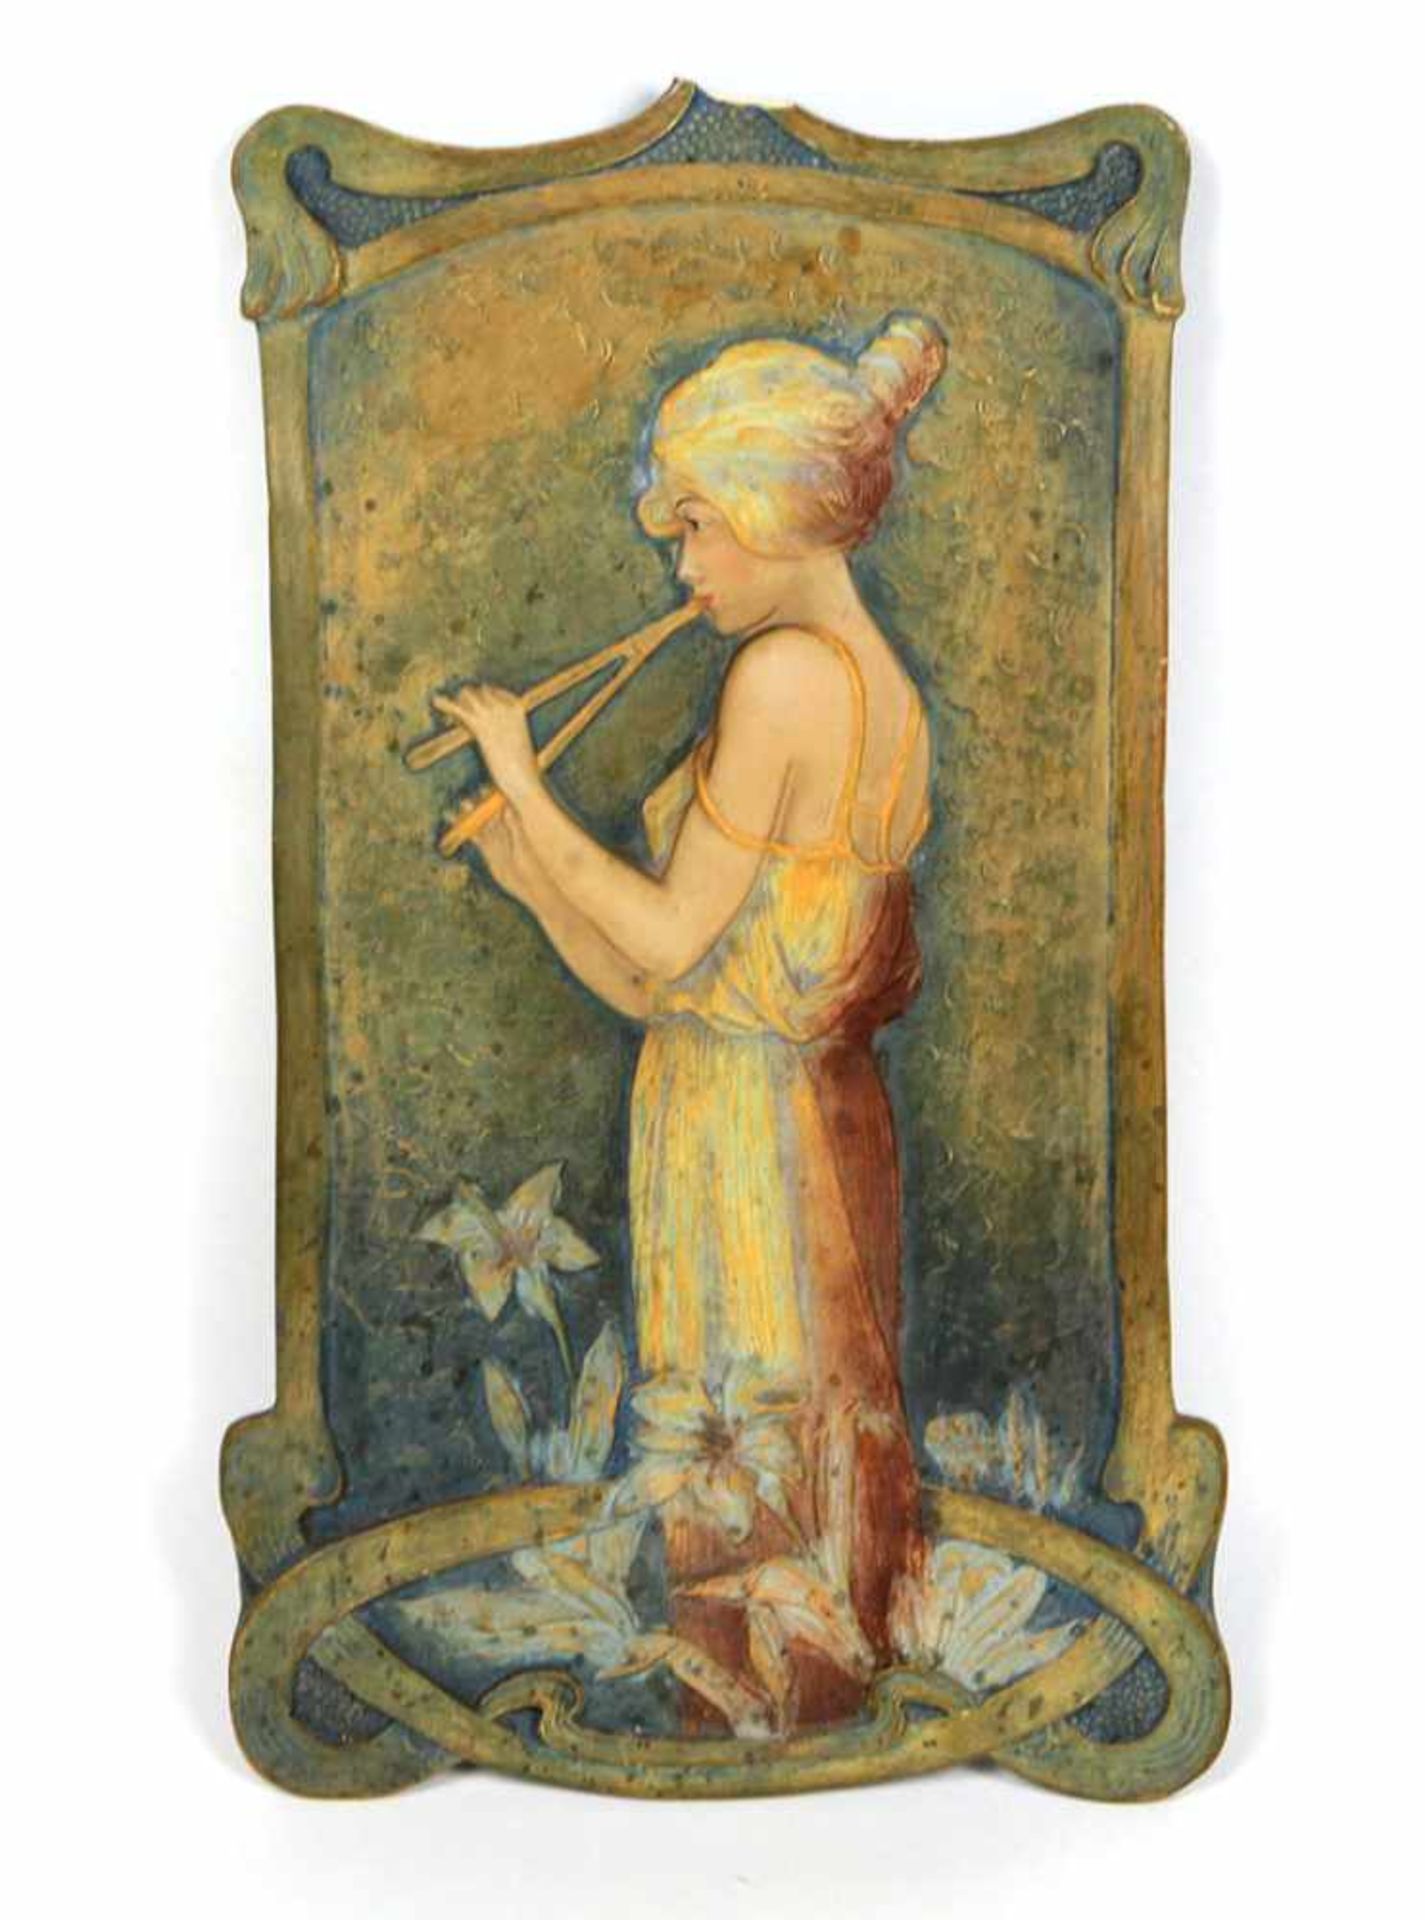 Jugendstil Wandrelief um 1900Steinzeug ungemarkt, hochrechteckige Reliefplatte mit verschlungener